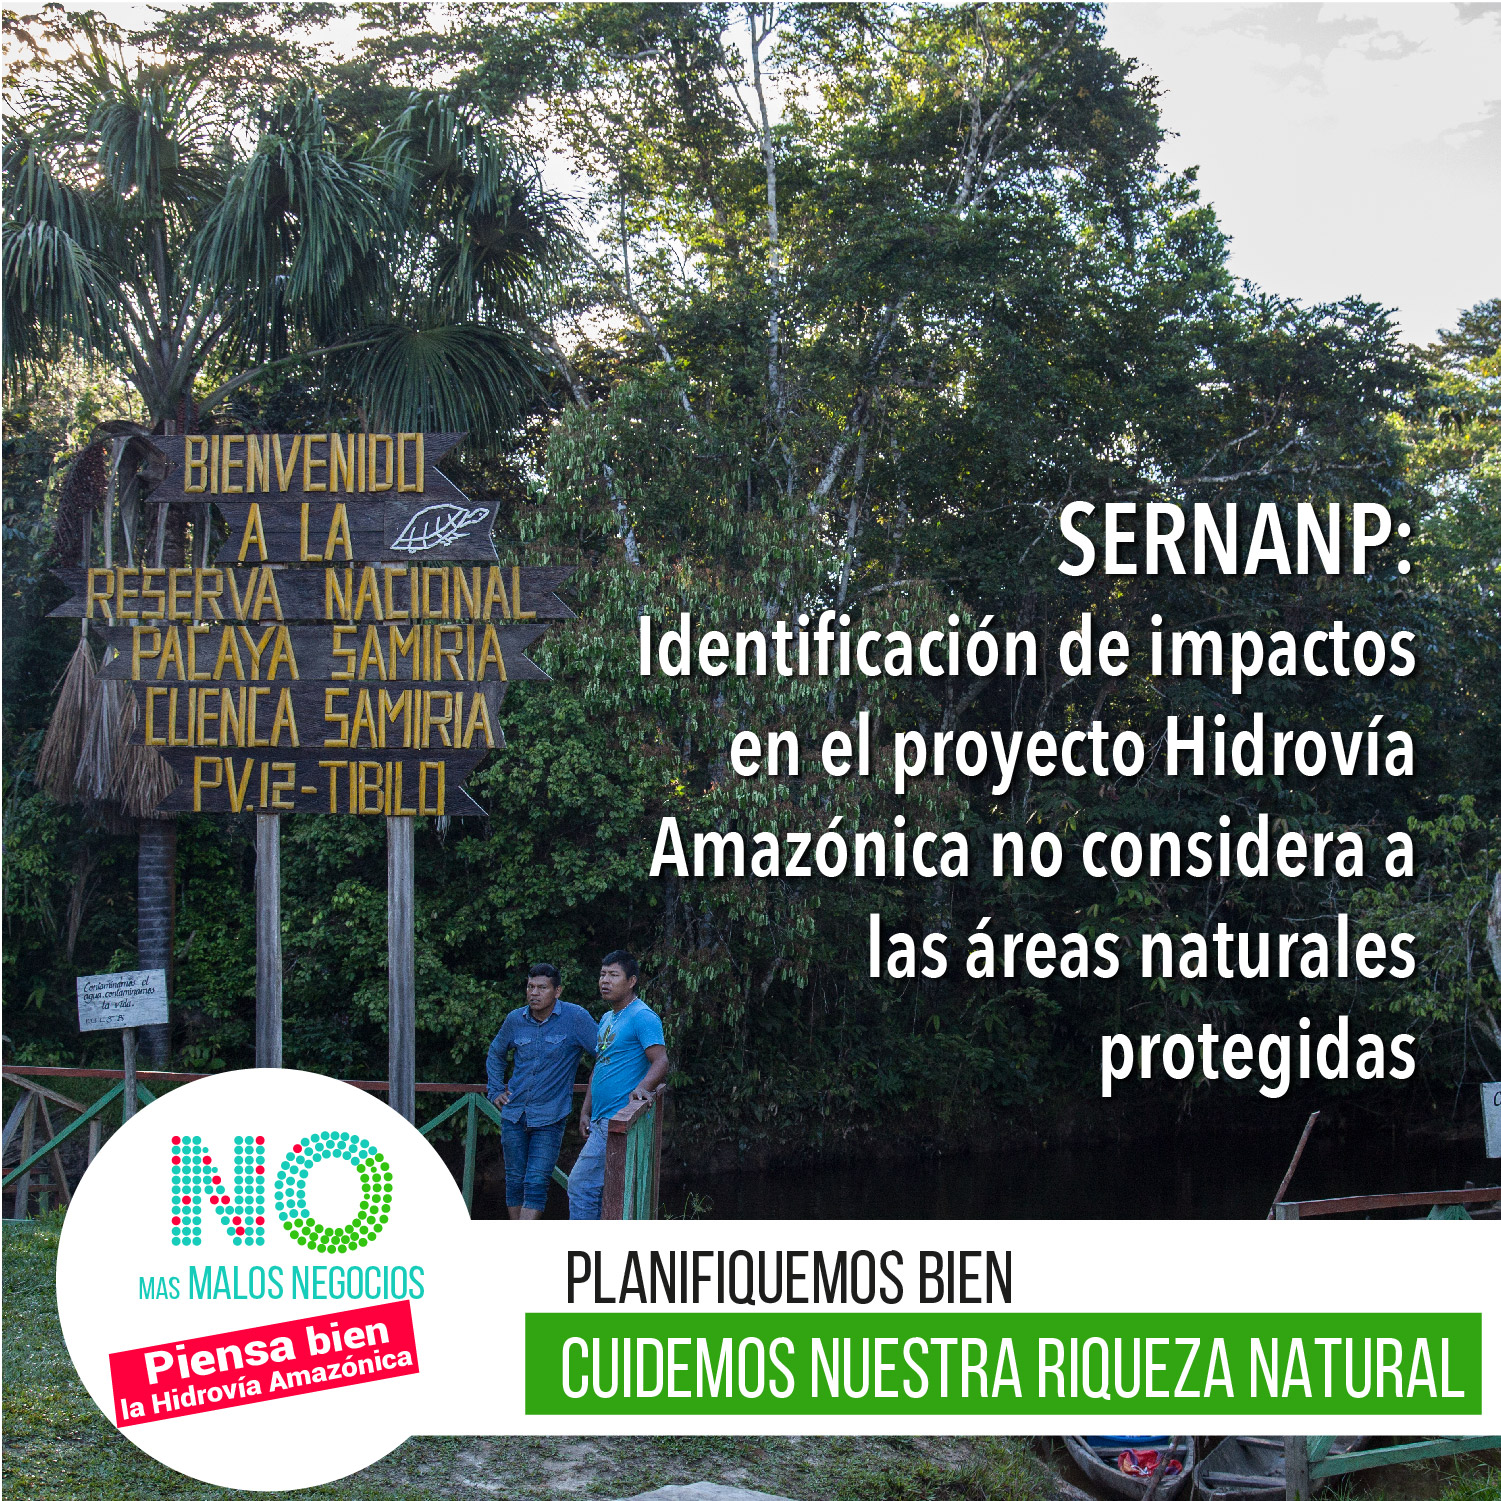 SERNANP: Identificación de impactos en el proyecto Hidrovía Amazónica no considera a las áreas naturales protegidas